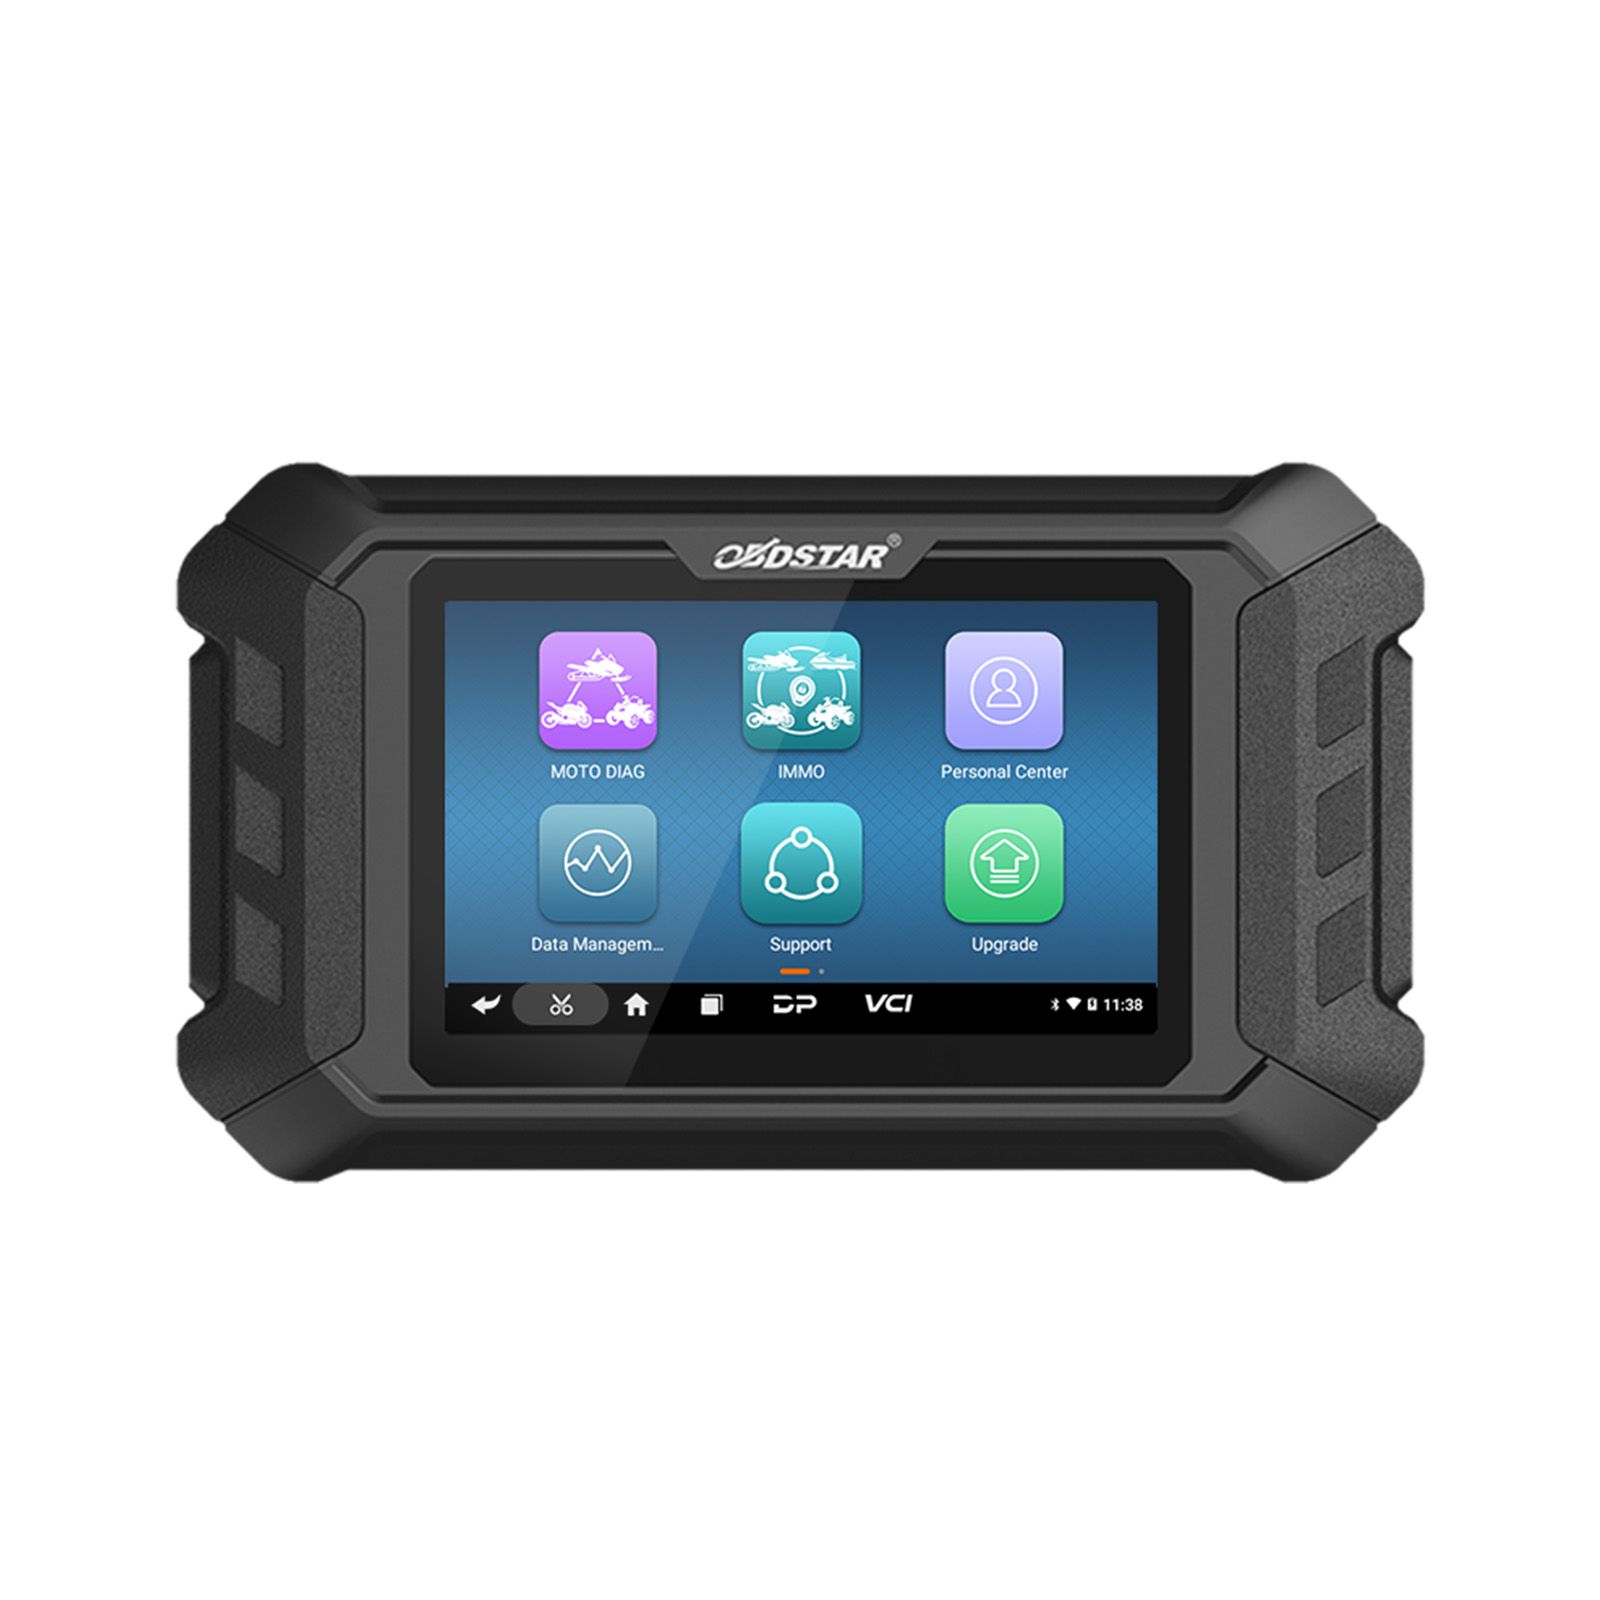 Obdstar iscan MV Agusta SMART Motorcycle Diagnosis Tool portátil tablet scanner